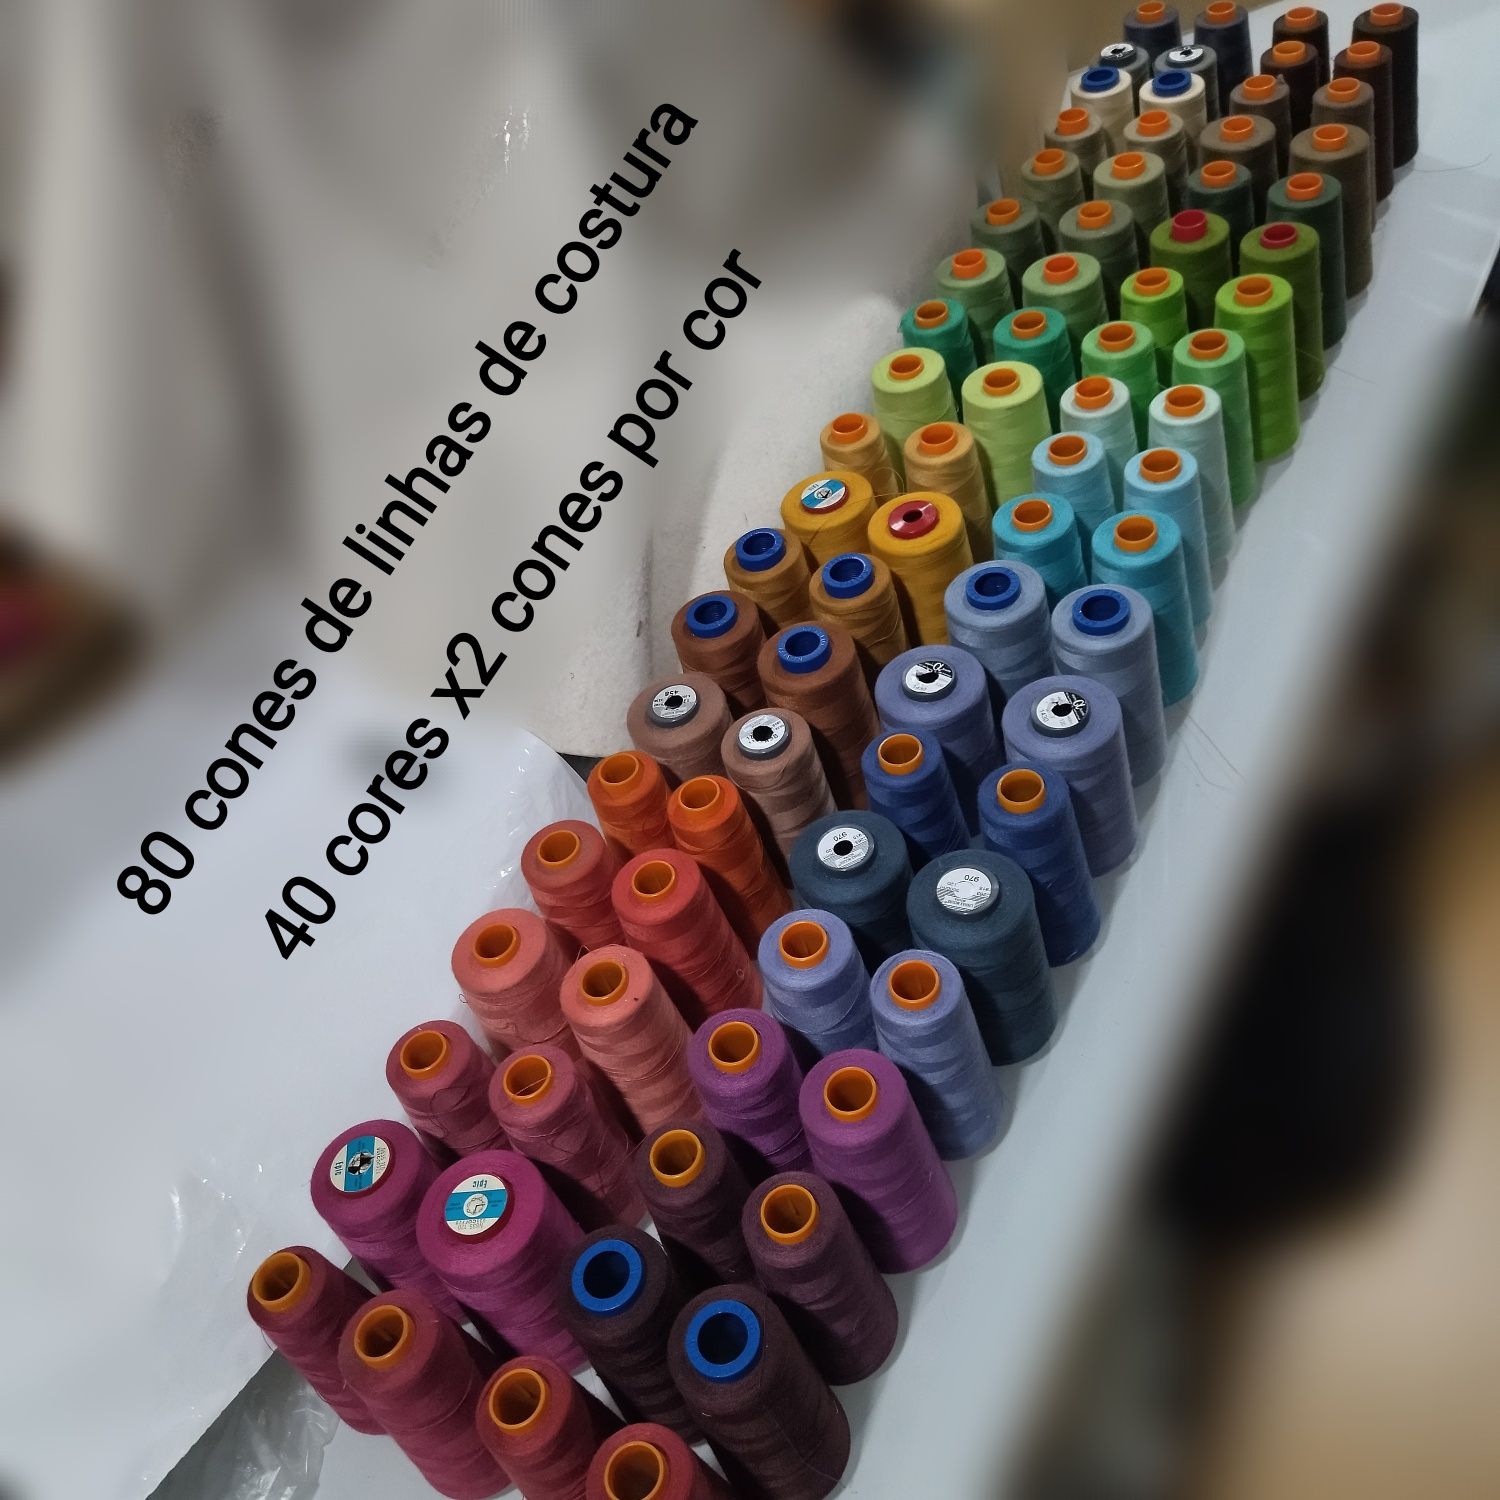 80 cones de linhas de costura bem cheios ( 40 cores x2 cones por cor)